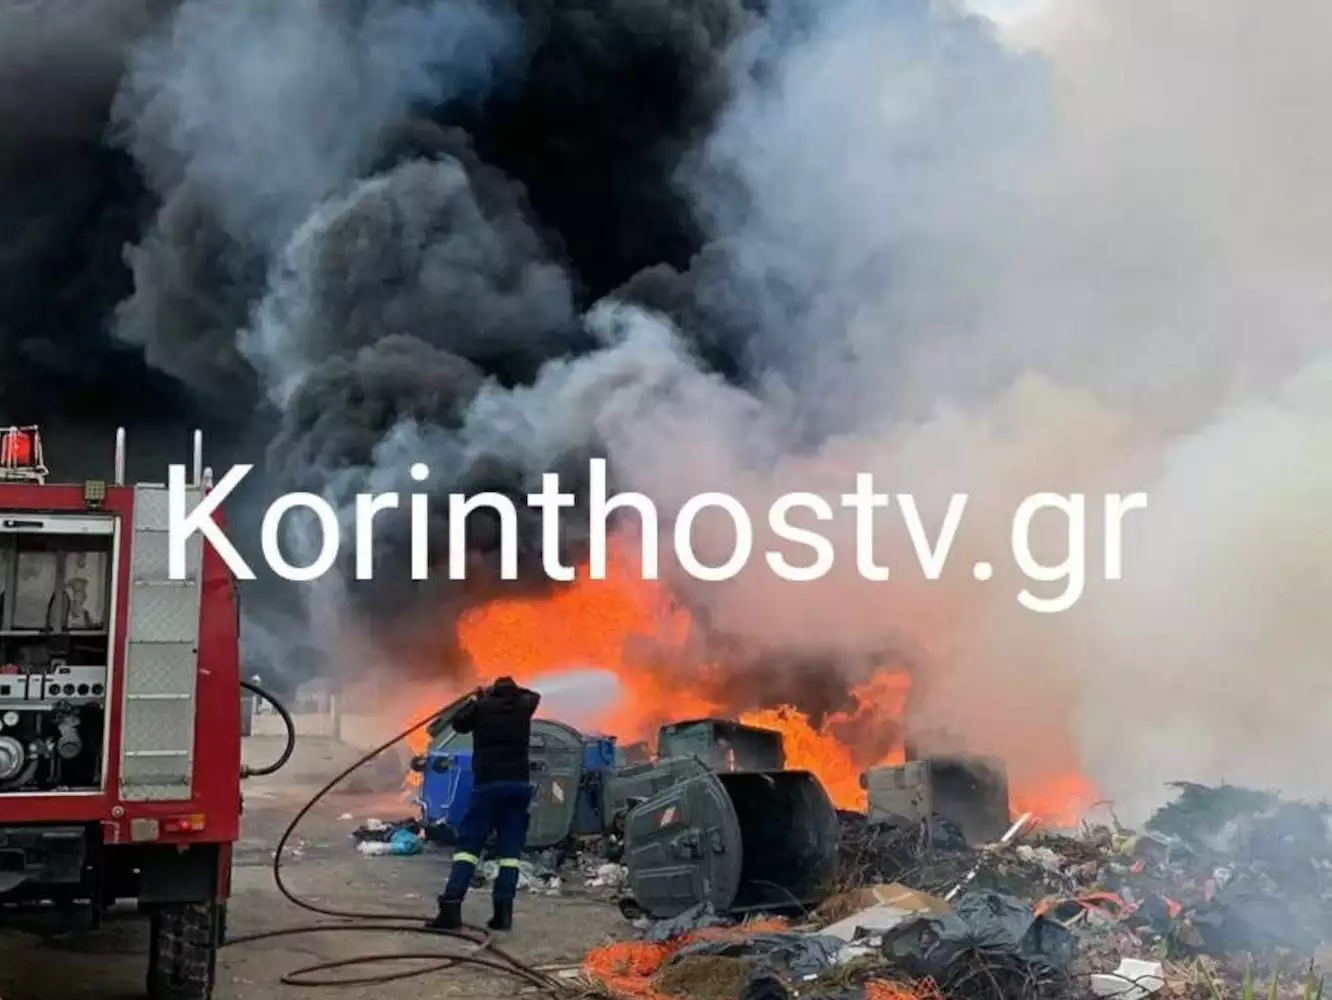 Κορινθία: Έσβησε η φωτιά που είχε ξεσπάσει σε εργοτάξιο του Δήμου Βέλου – Βόχας (φώτο) (upd)